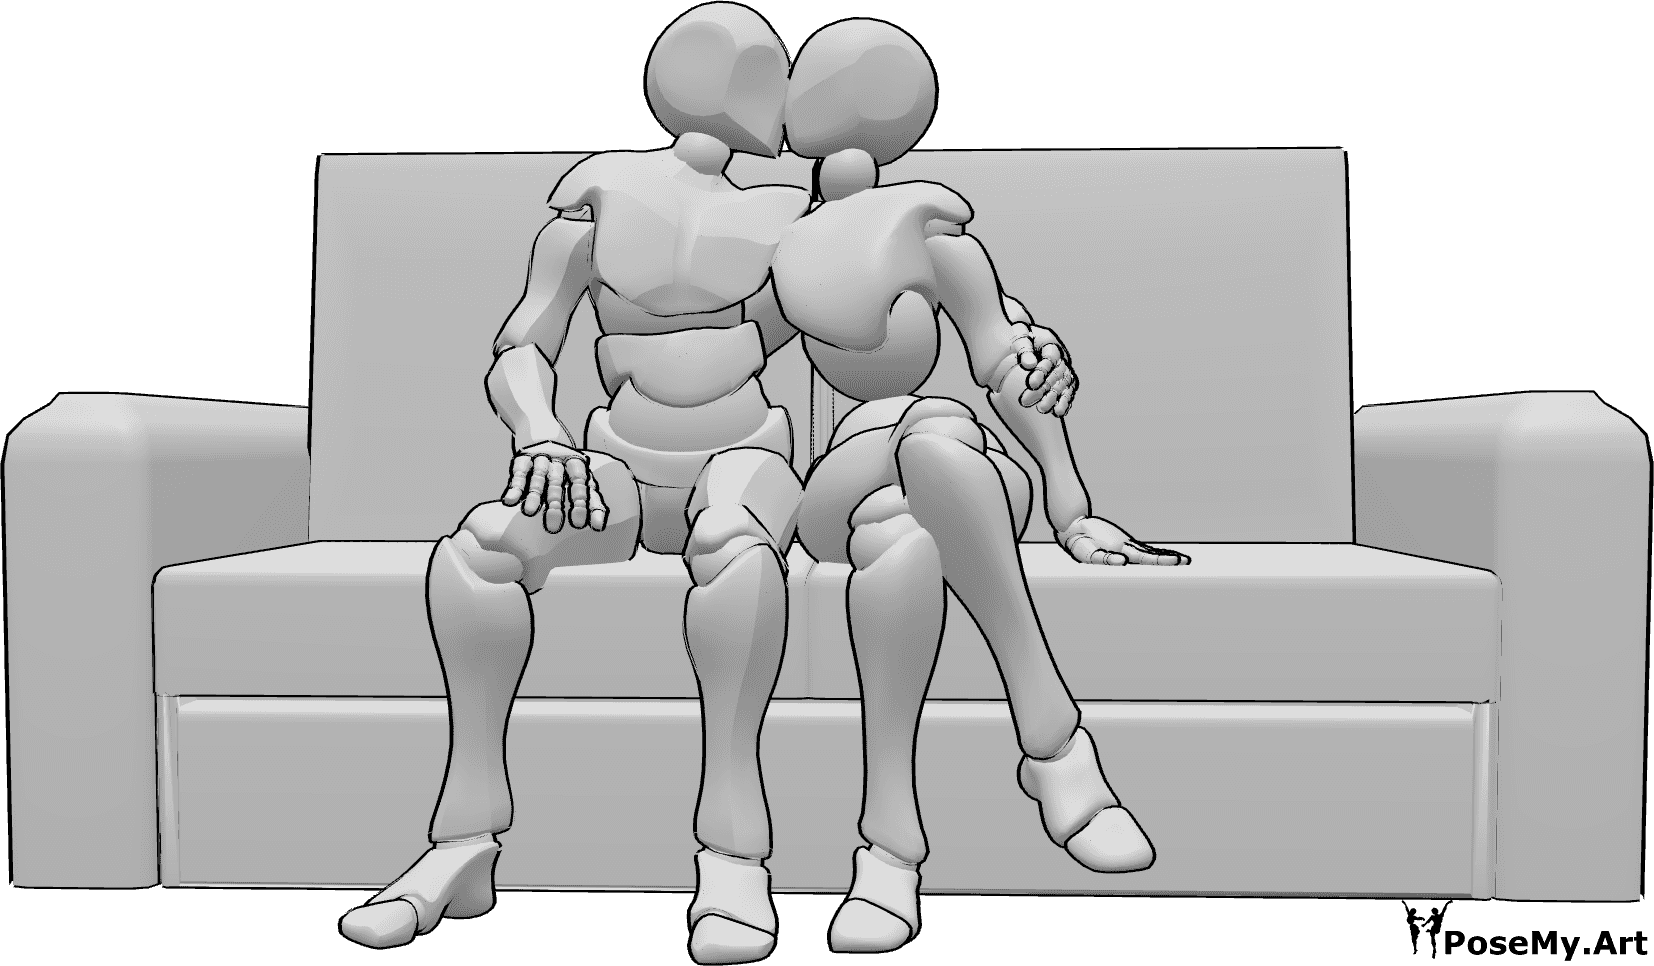 Posen-Referenz- Sitzende Umarmungshaltung - Mann und Frau sitzen auf dem Sofa und küssen sich